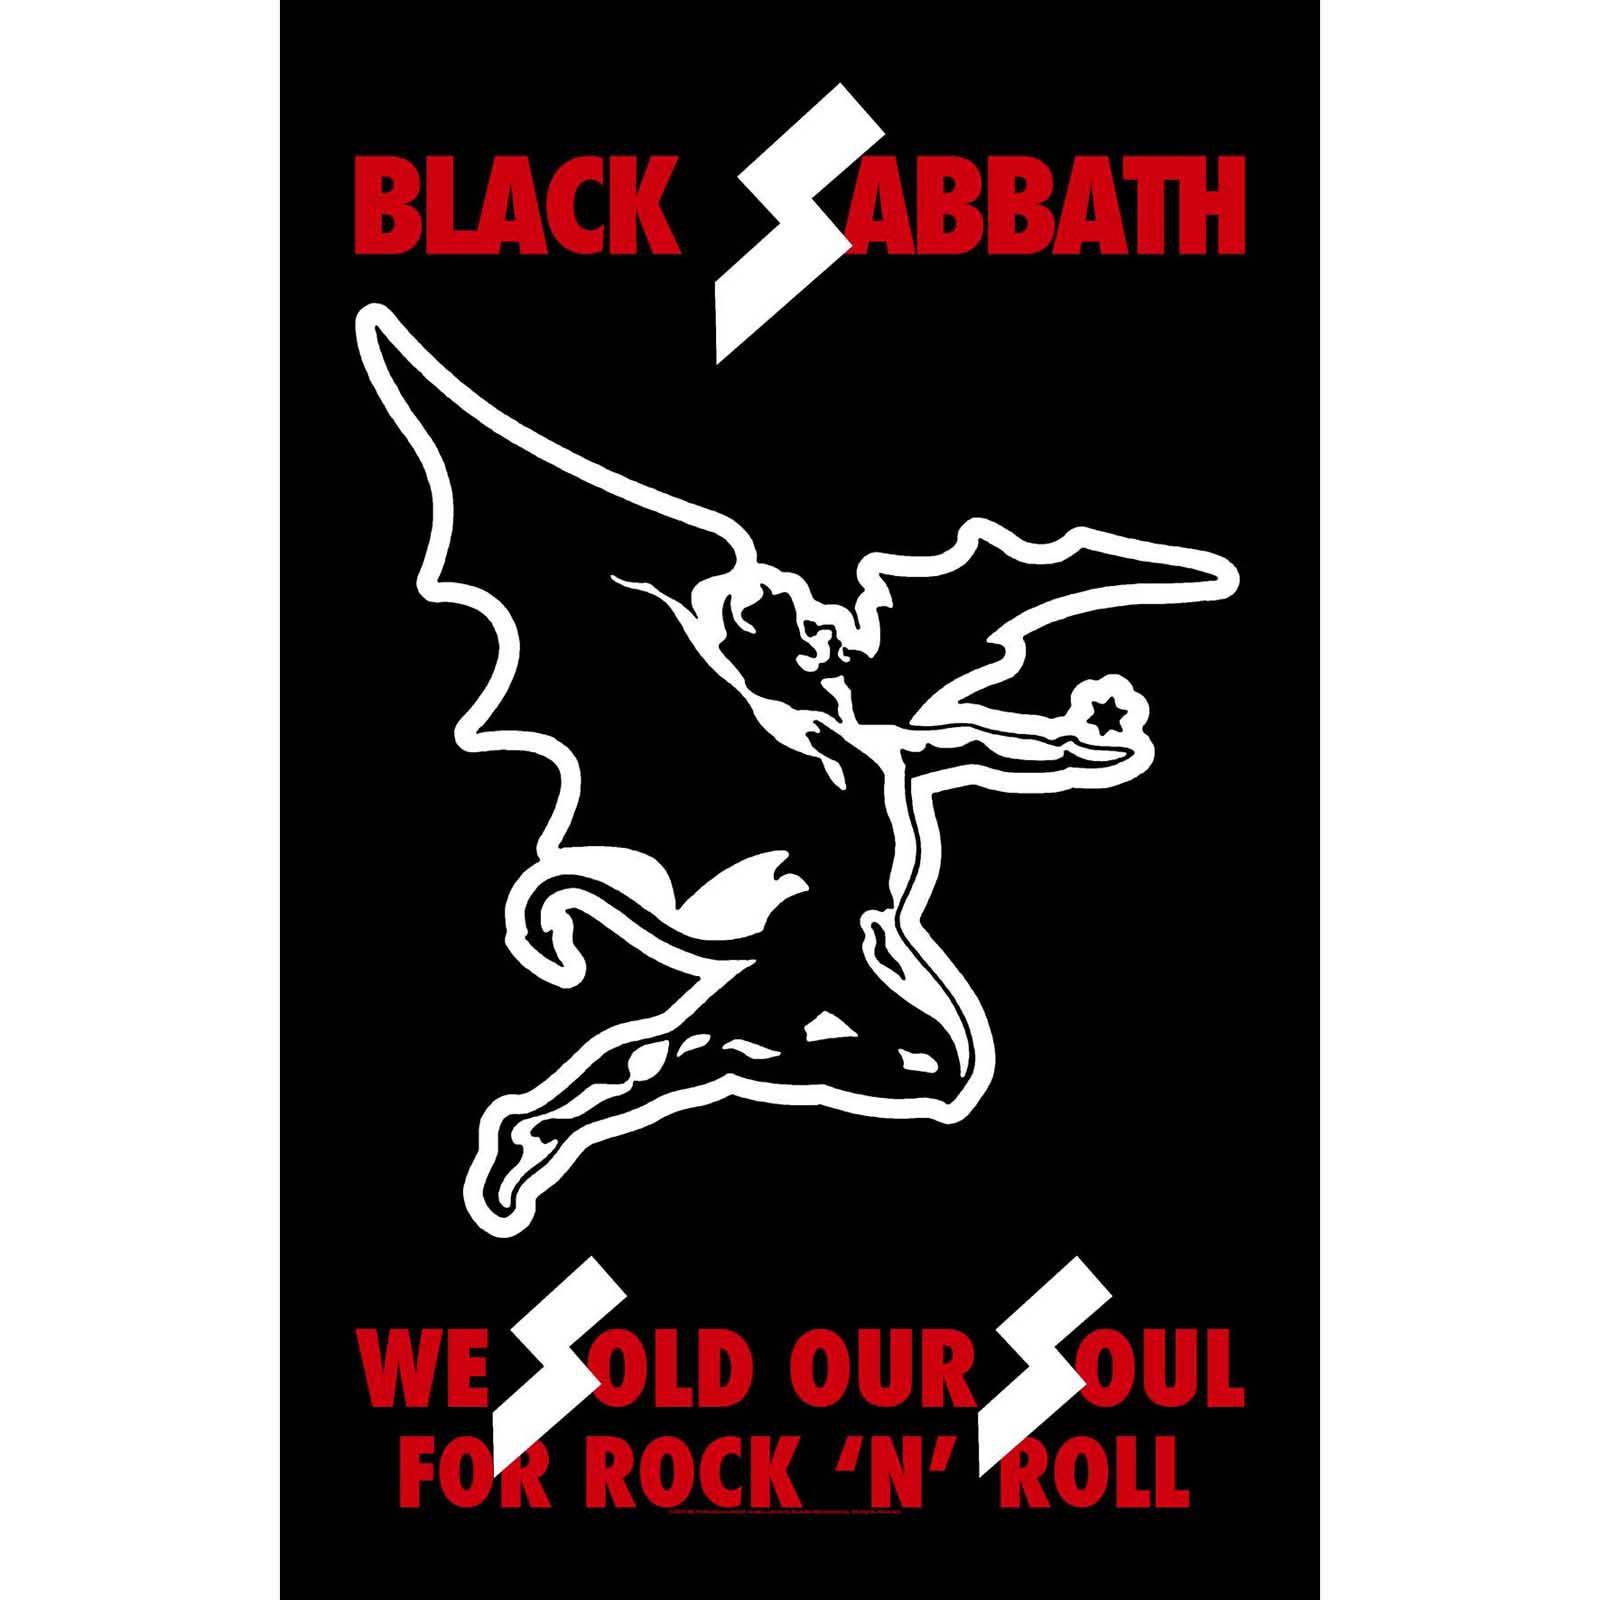 (ブラック・サバス) Black Sabbath オフィシャル商品 Sold Our Souls テキスタイルポスター 布製 ポス..